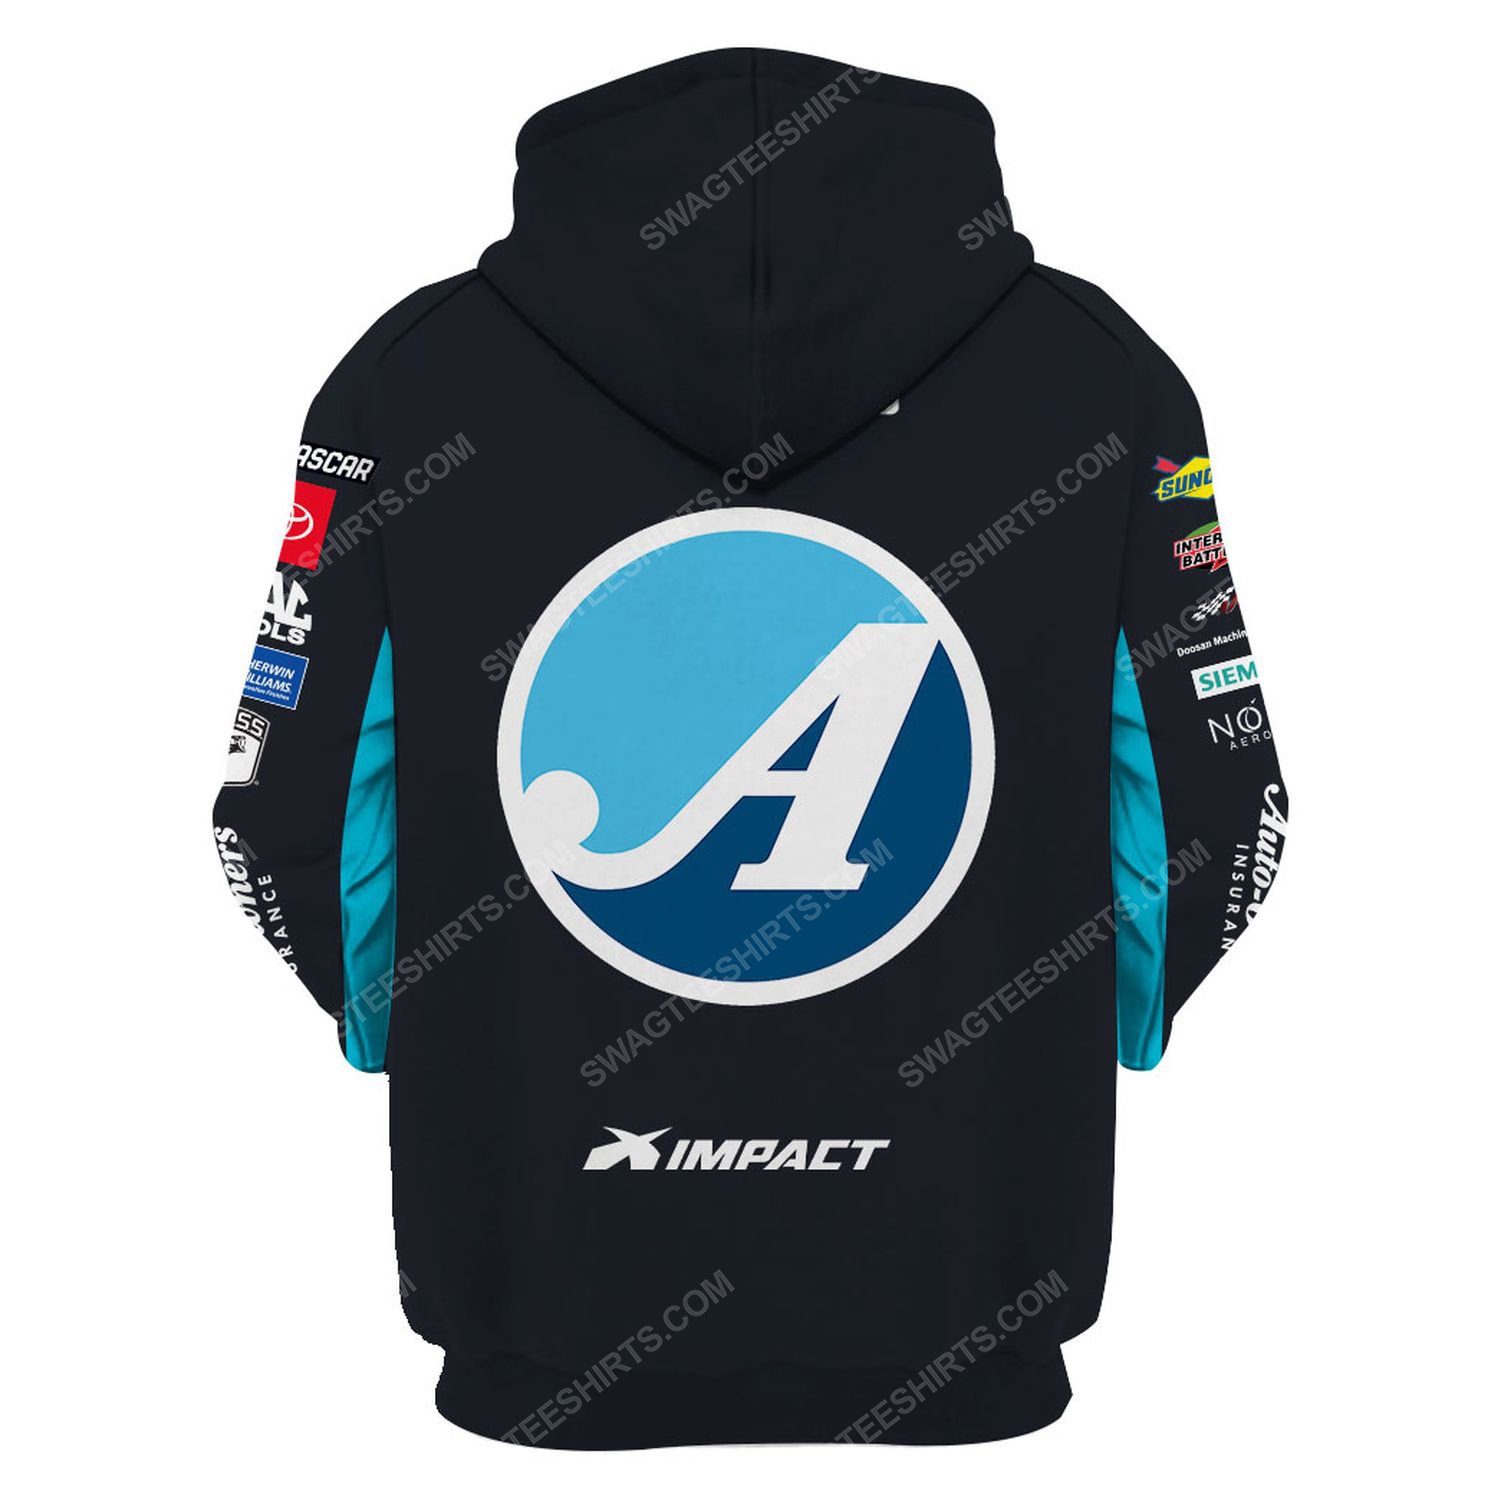 Custom auto-owners insurance racing team motorsport full printing hoodie - back